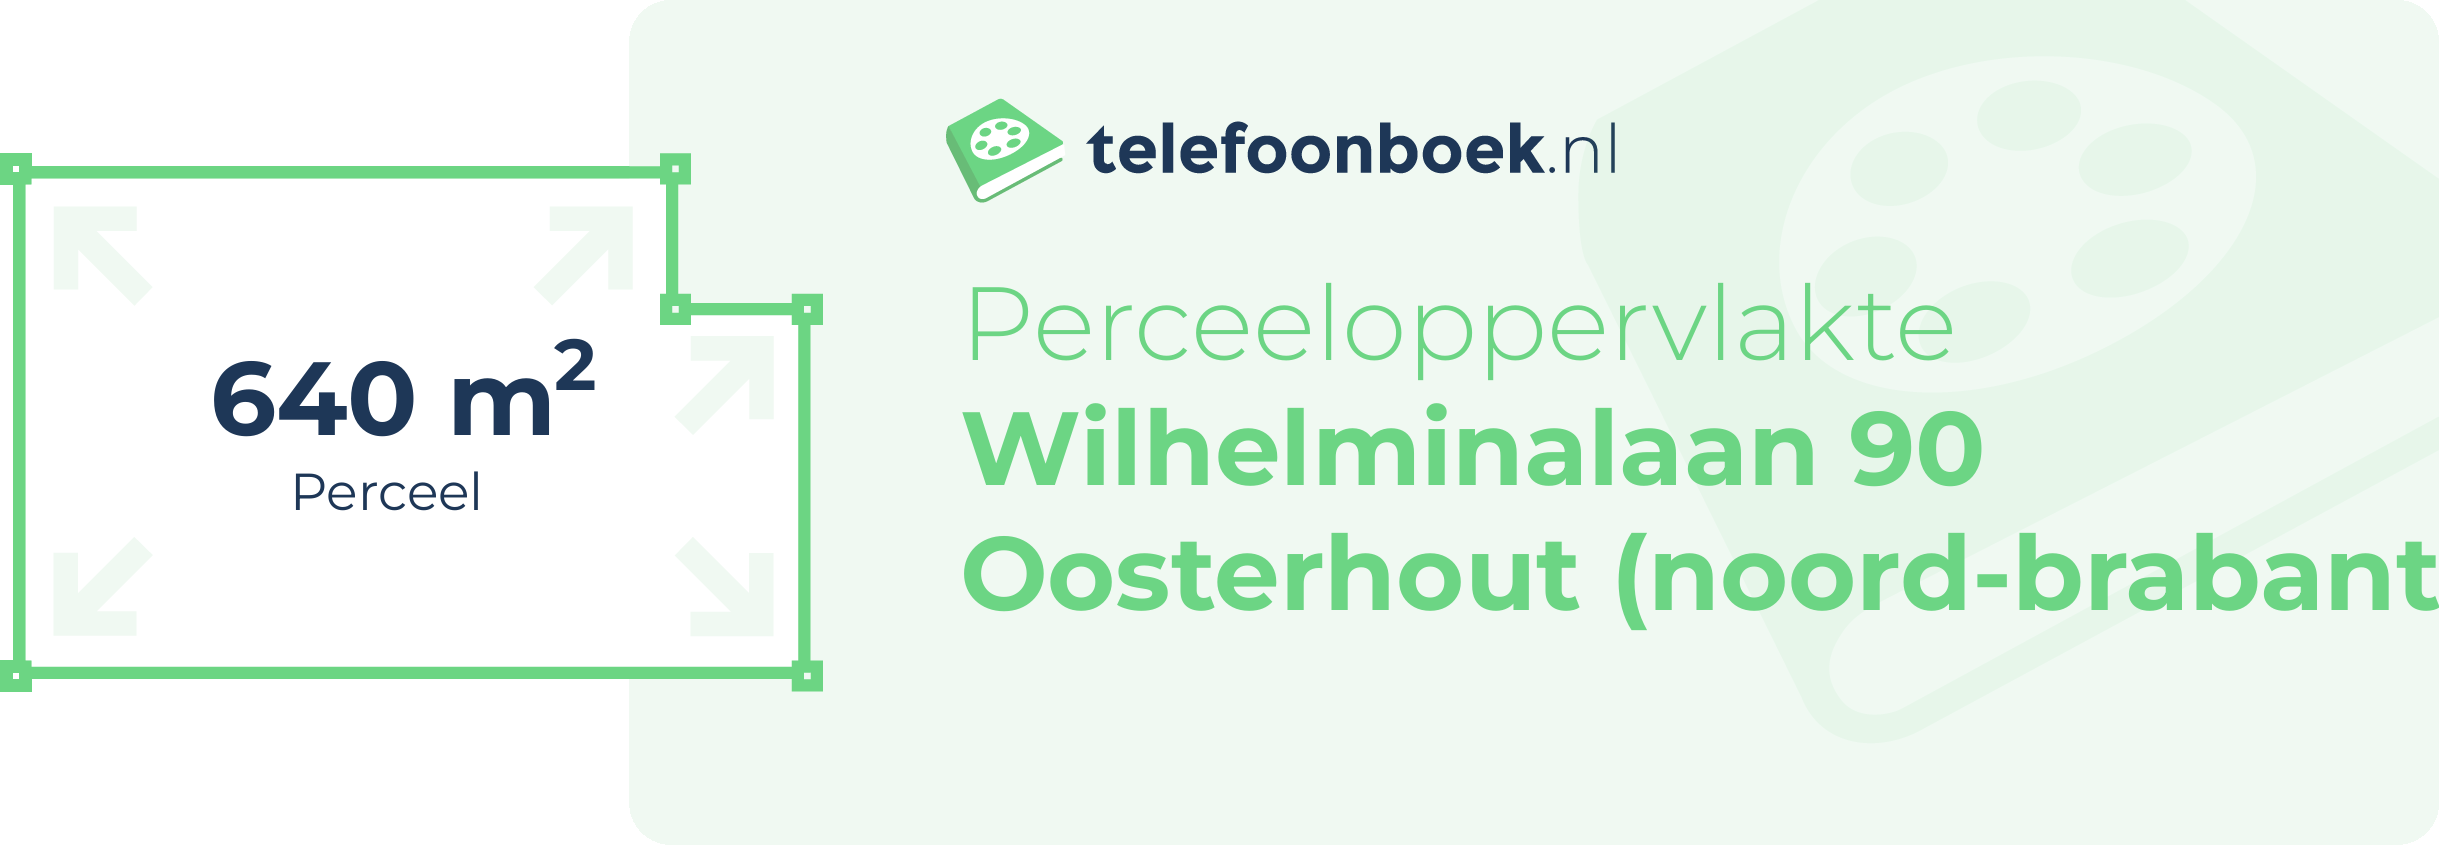 Perceeloppervlakte Wilhelminalaan 90 Oosterhout (Noord-Brabant)